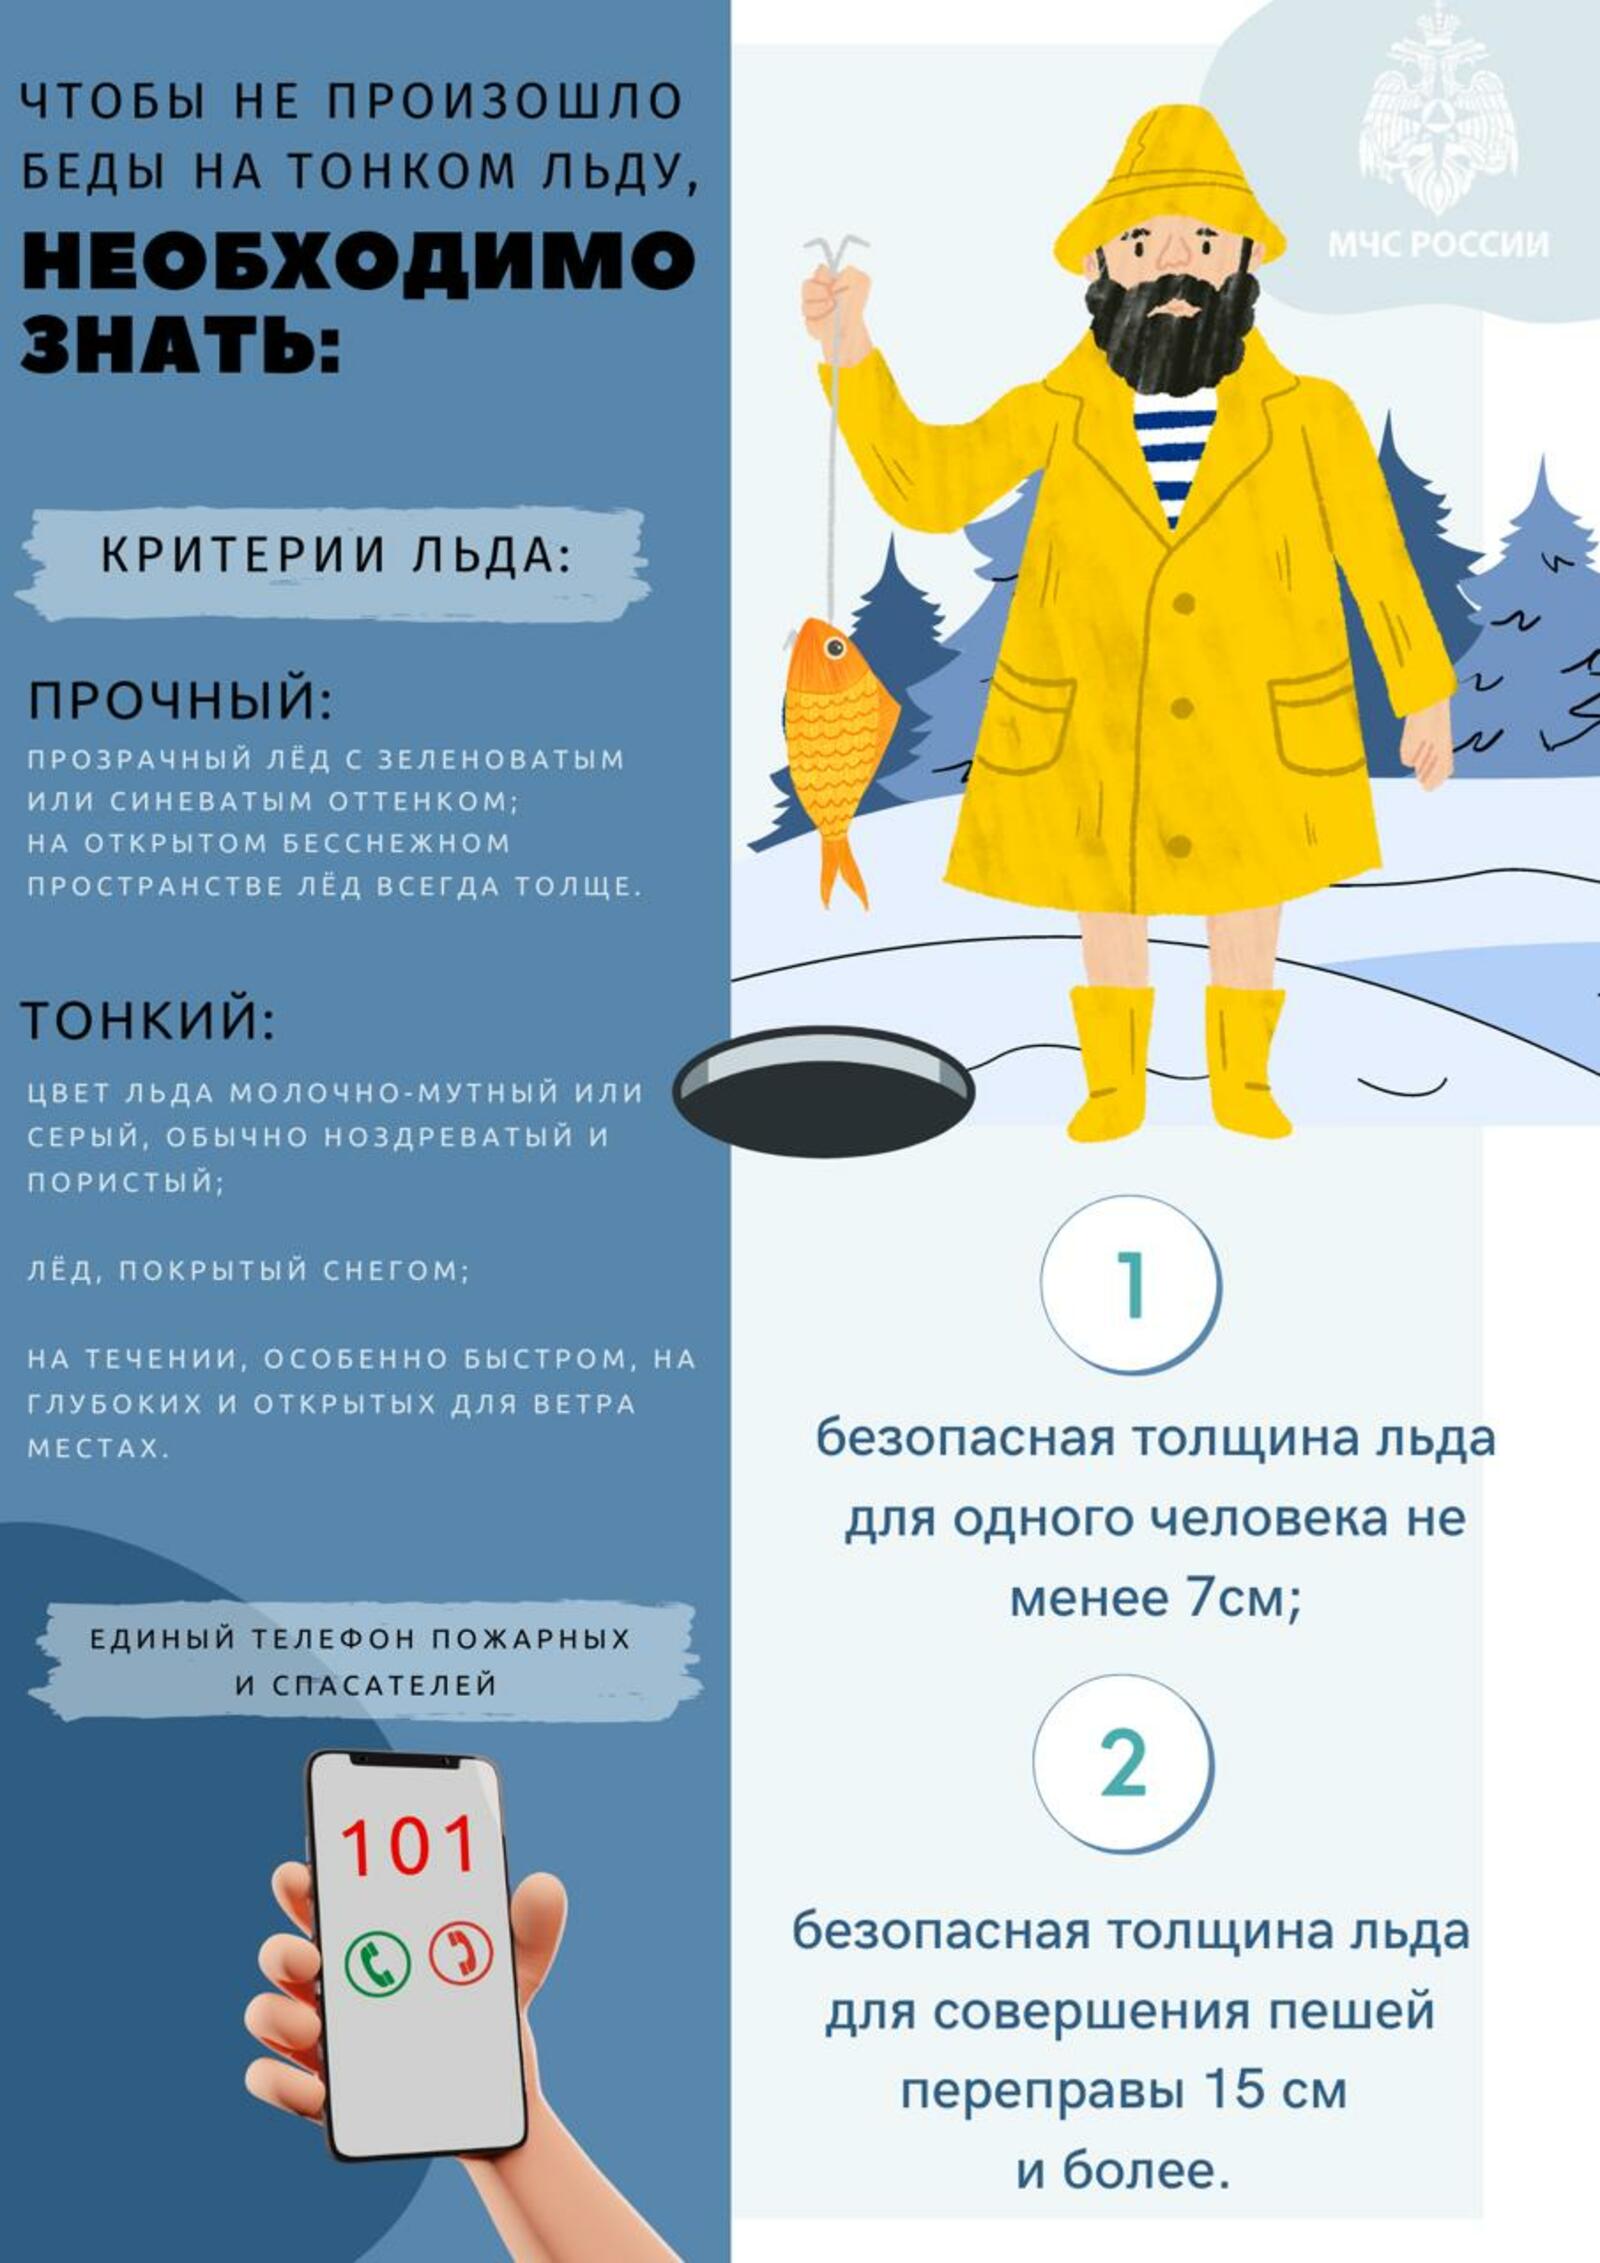 В Башкирии впервые введено административное наказание в виде штрафа за нахождение на льду, толщина которого менее 7 сантиметров.